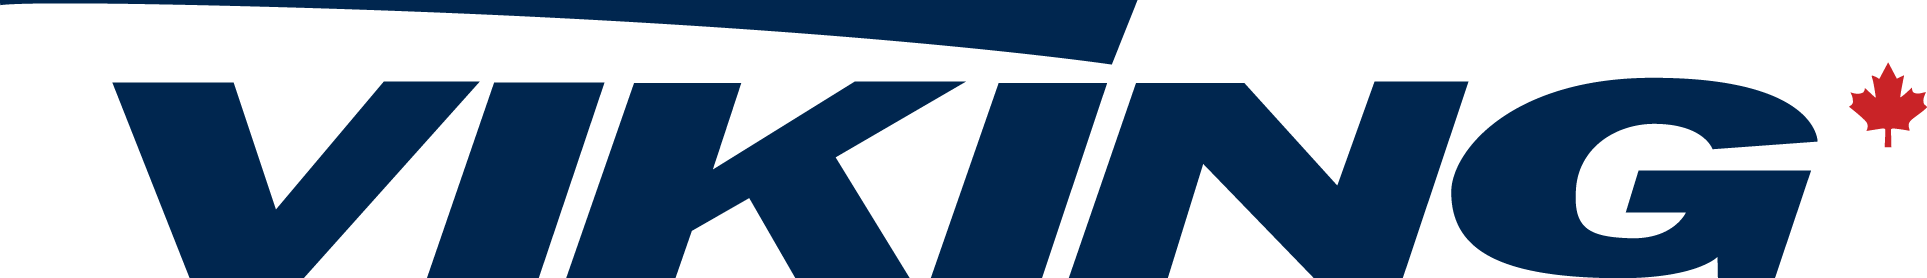 Viking_Air_logo